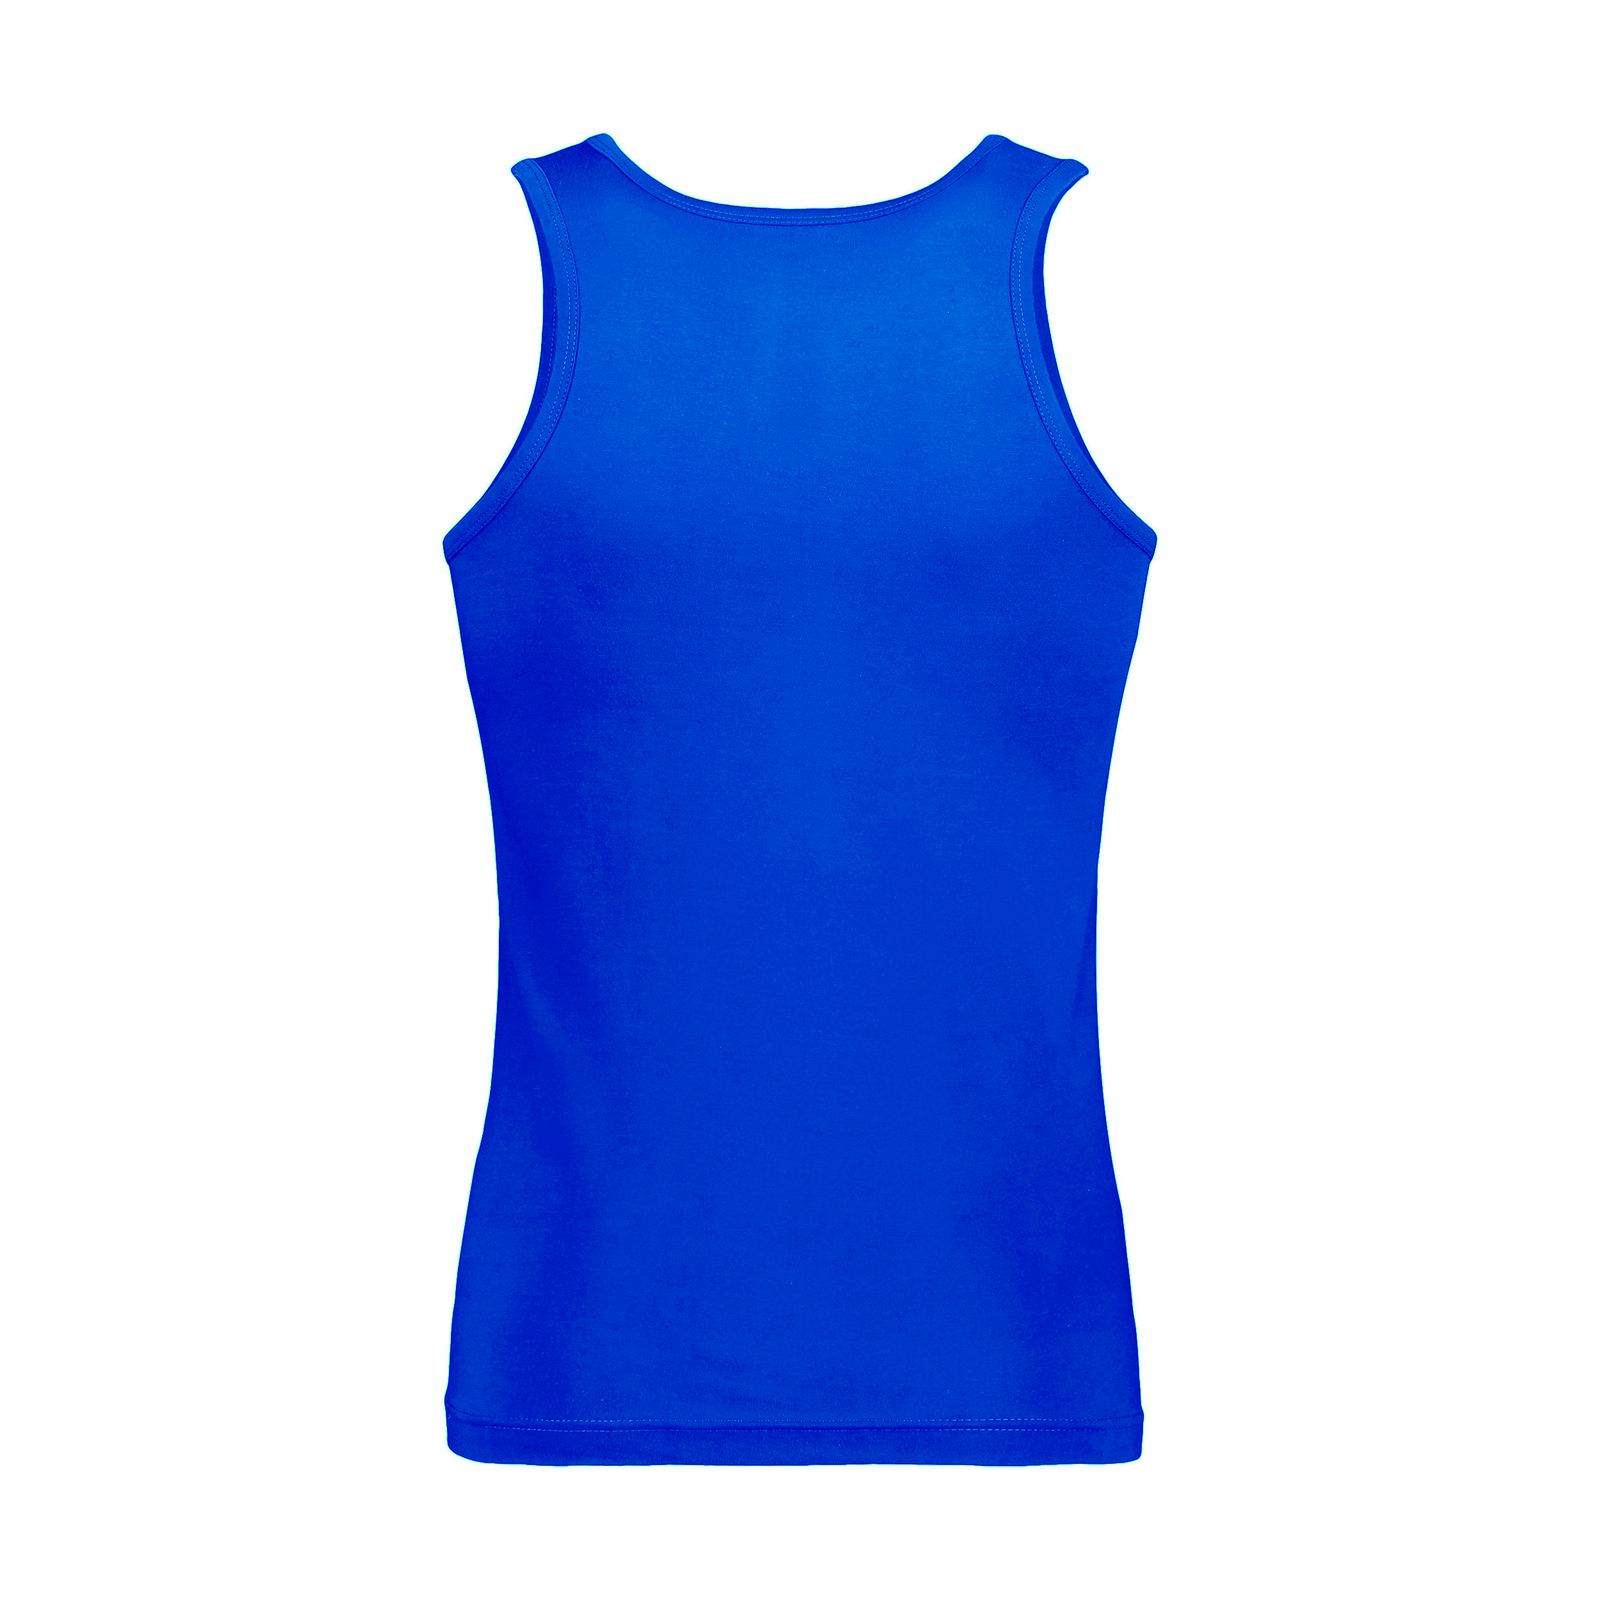 زیرپوش رکابی مردانه برهان تن پوش مدل 14-01 رنگ آبی بسته 8 عددی -  - 4